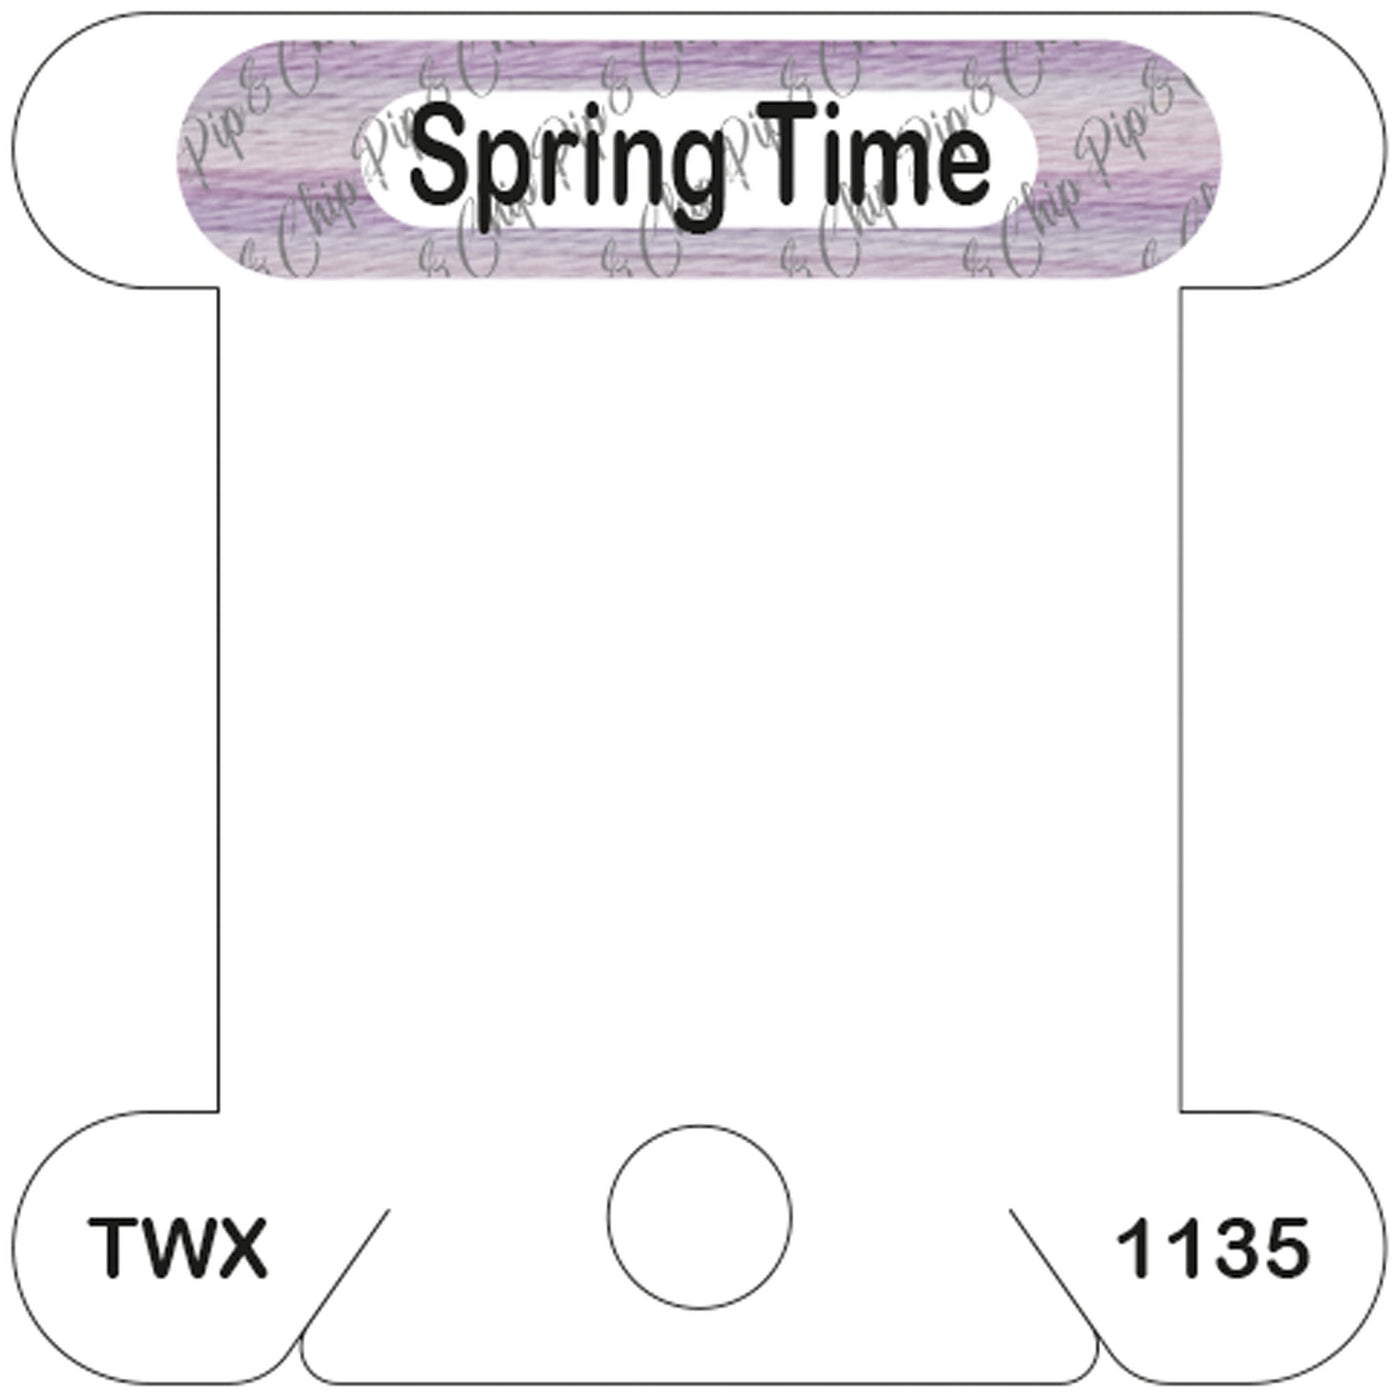 ThreadworX Spring Time acrylic bobbin